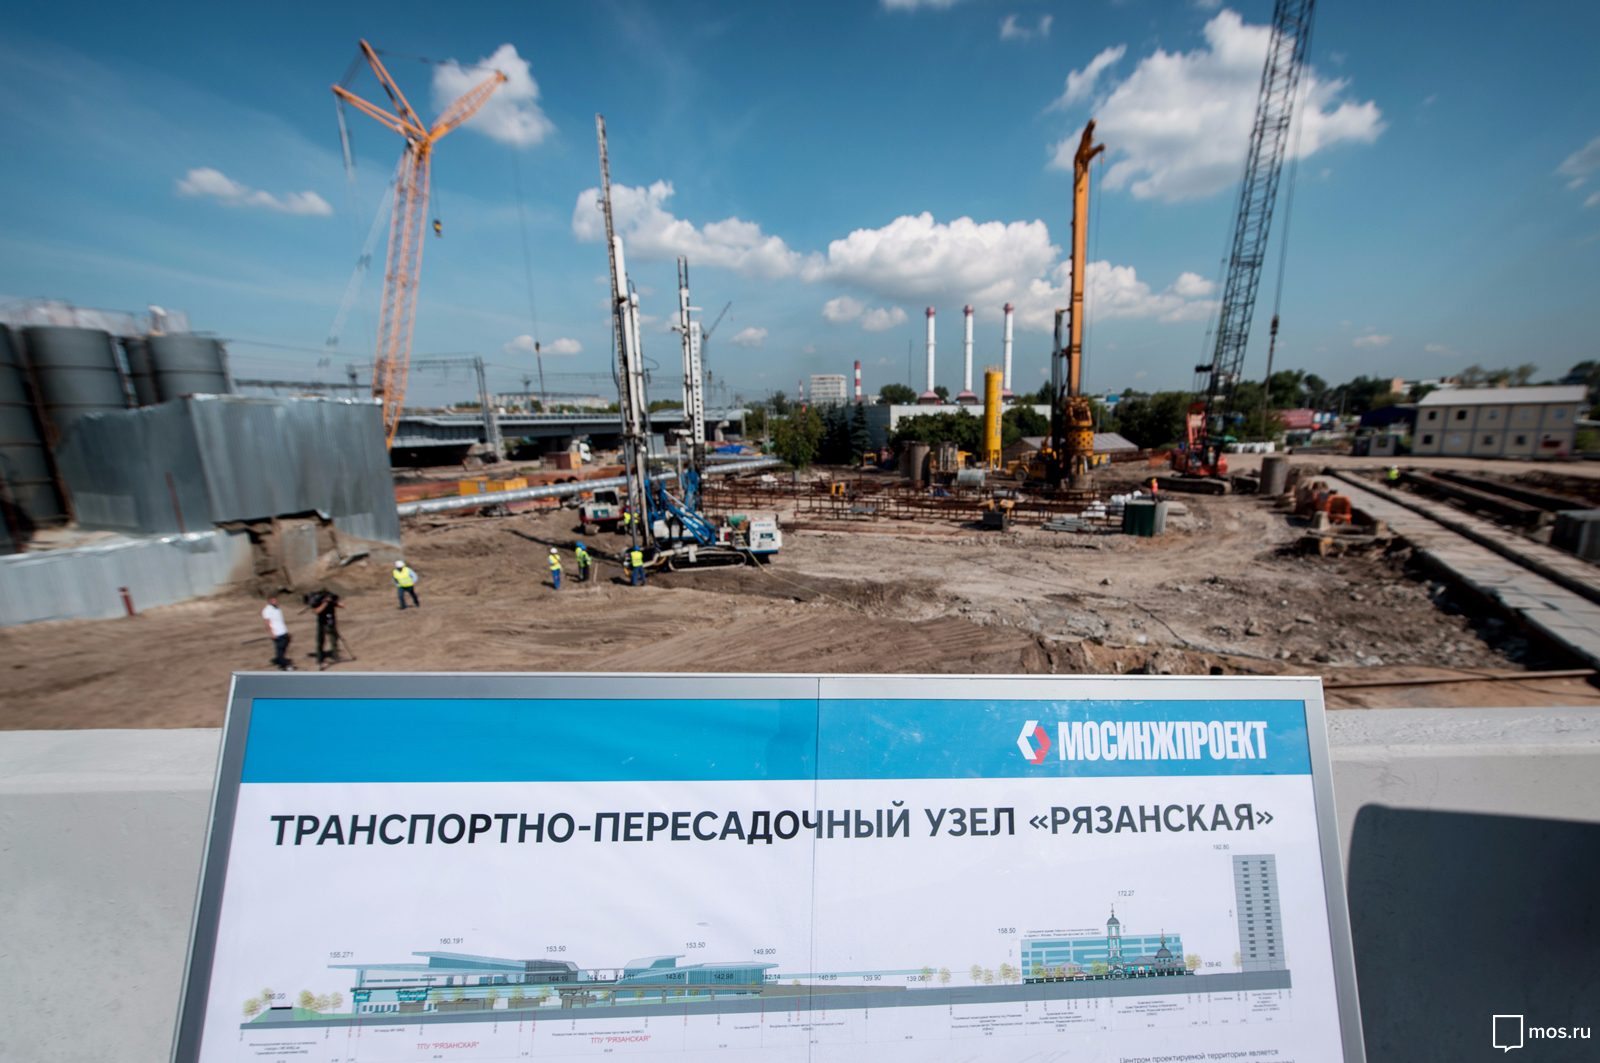 Офисный центр построят на территории ТПУ "Рязанская"